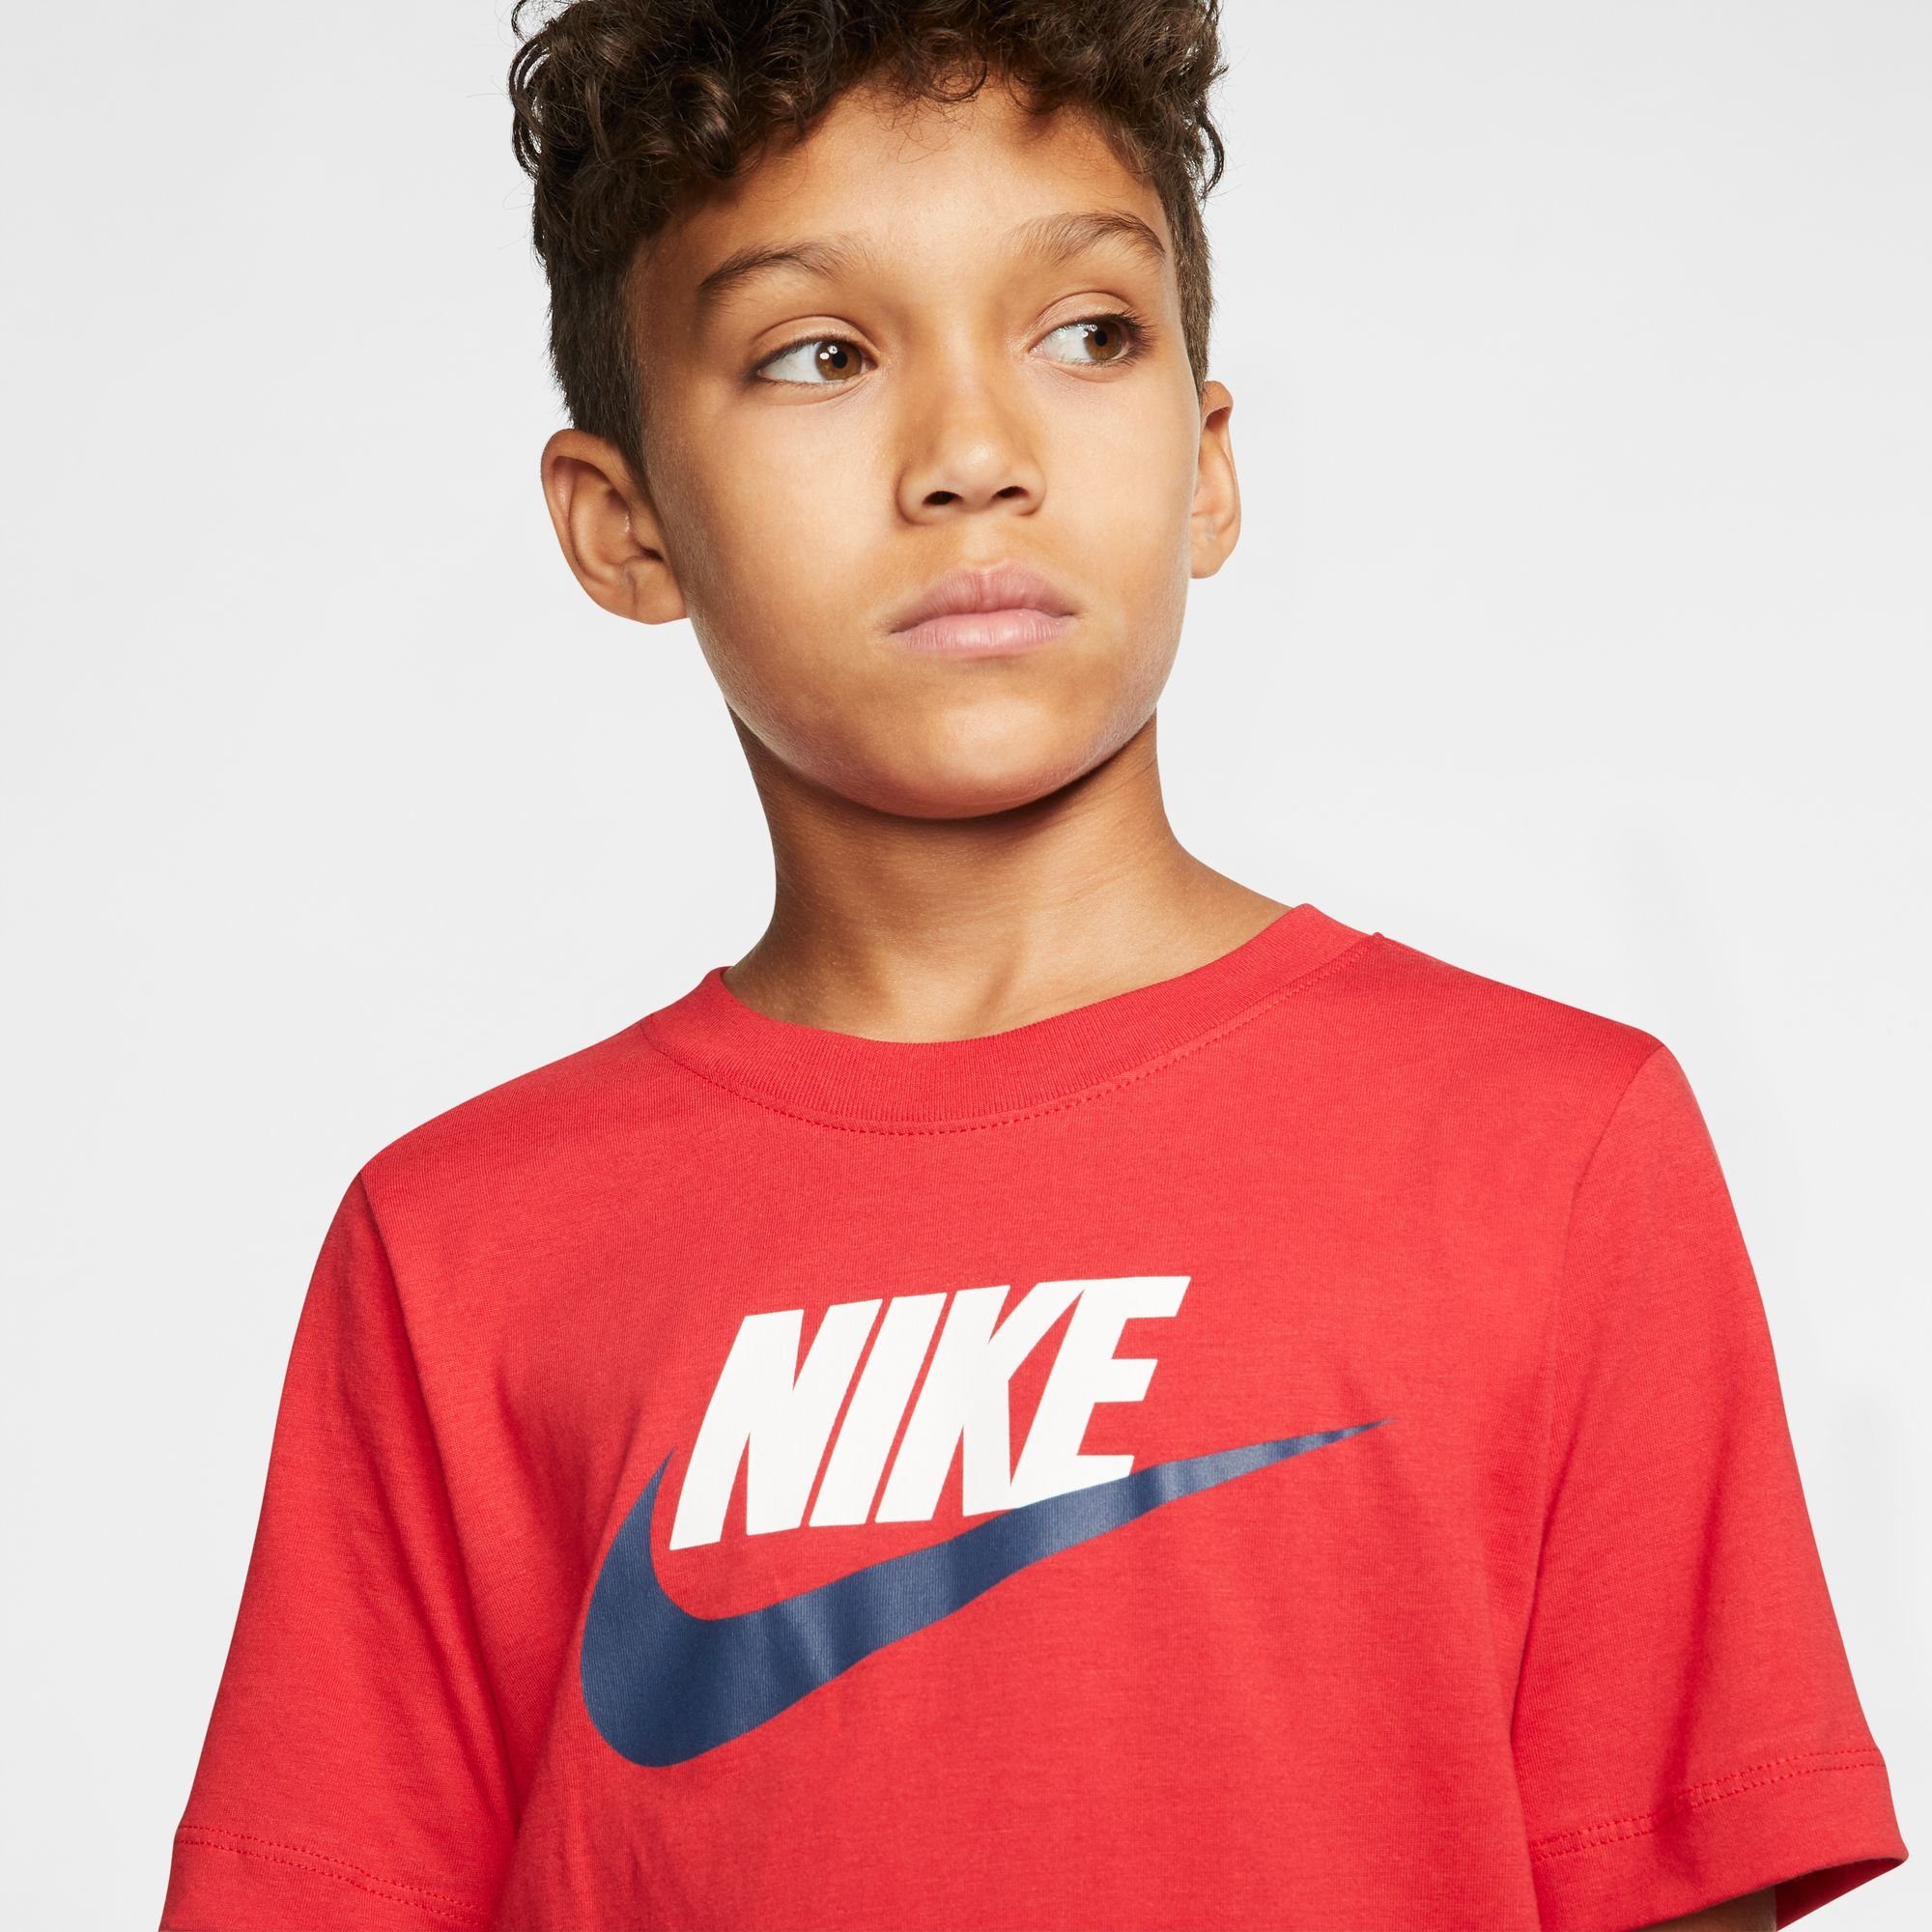 Nike T-SHIRT KIDS' COTTON Sportswear T-Shirt BIG rot